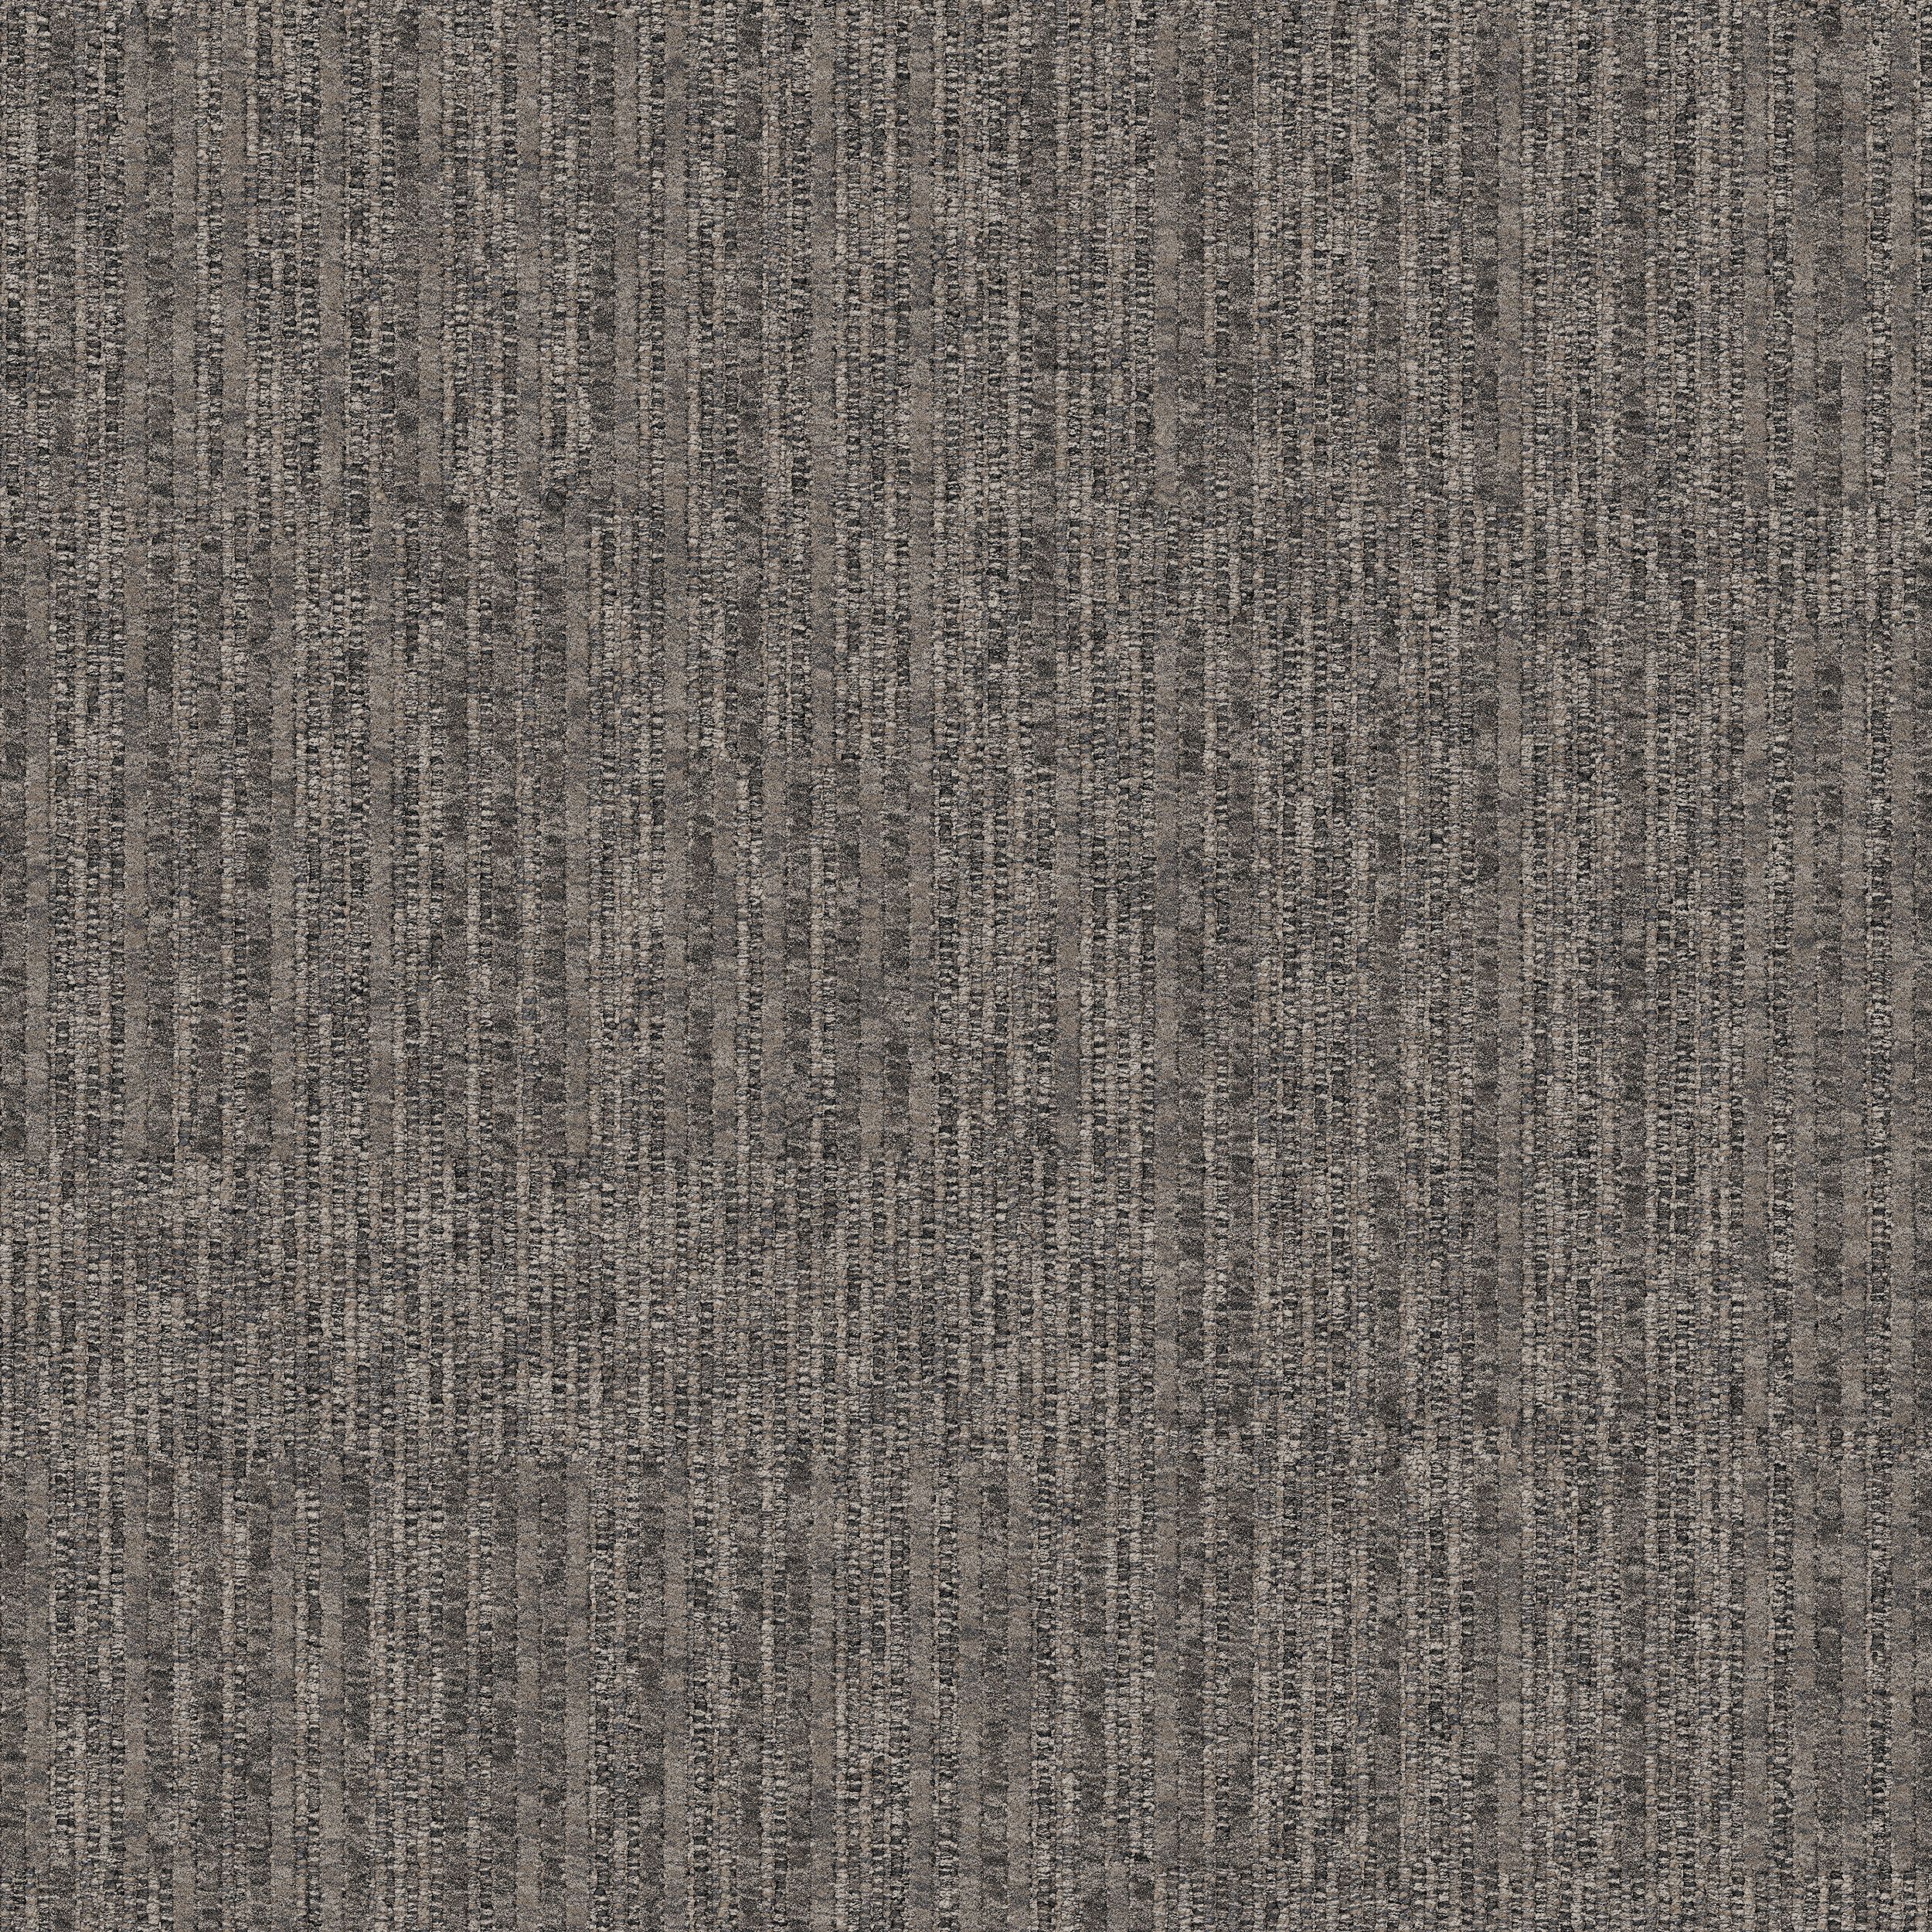 Equilibrium Carpet Tile In Persistence número de imagen 6